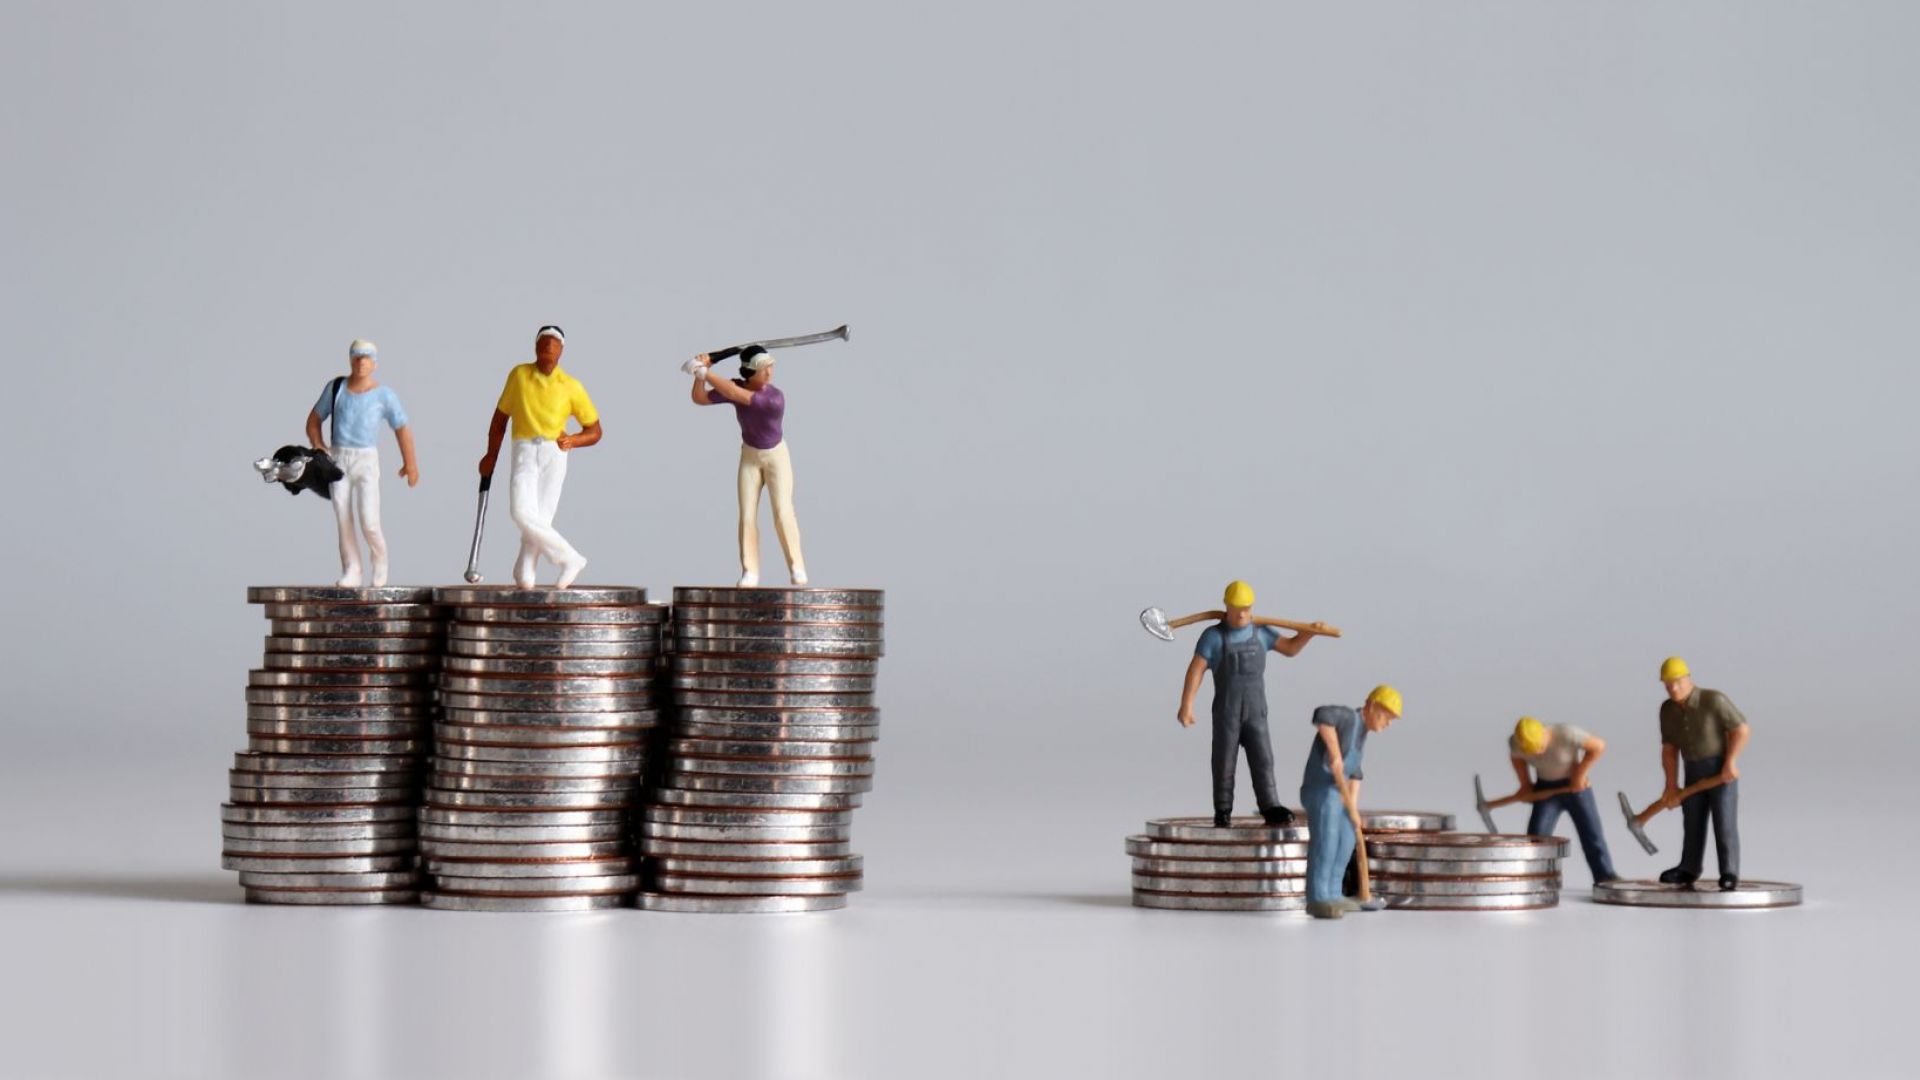 Работещи бедни: Ще мине ли директивата за минималната заплата